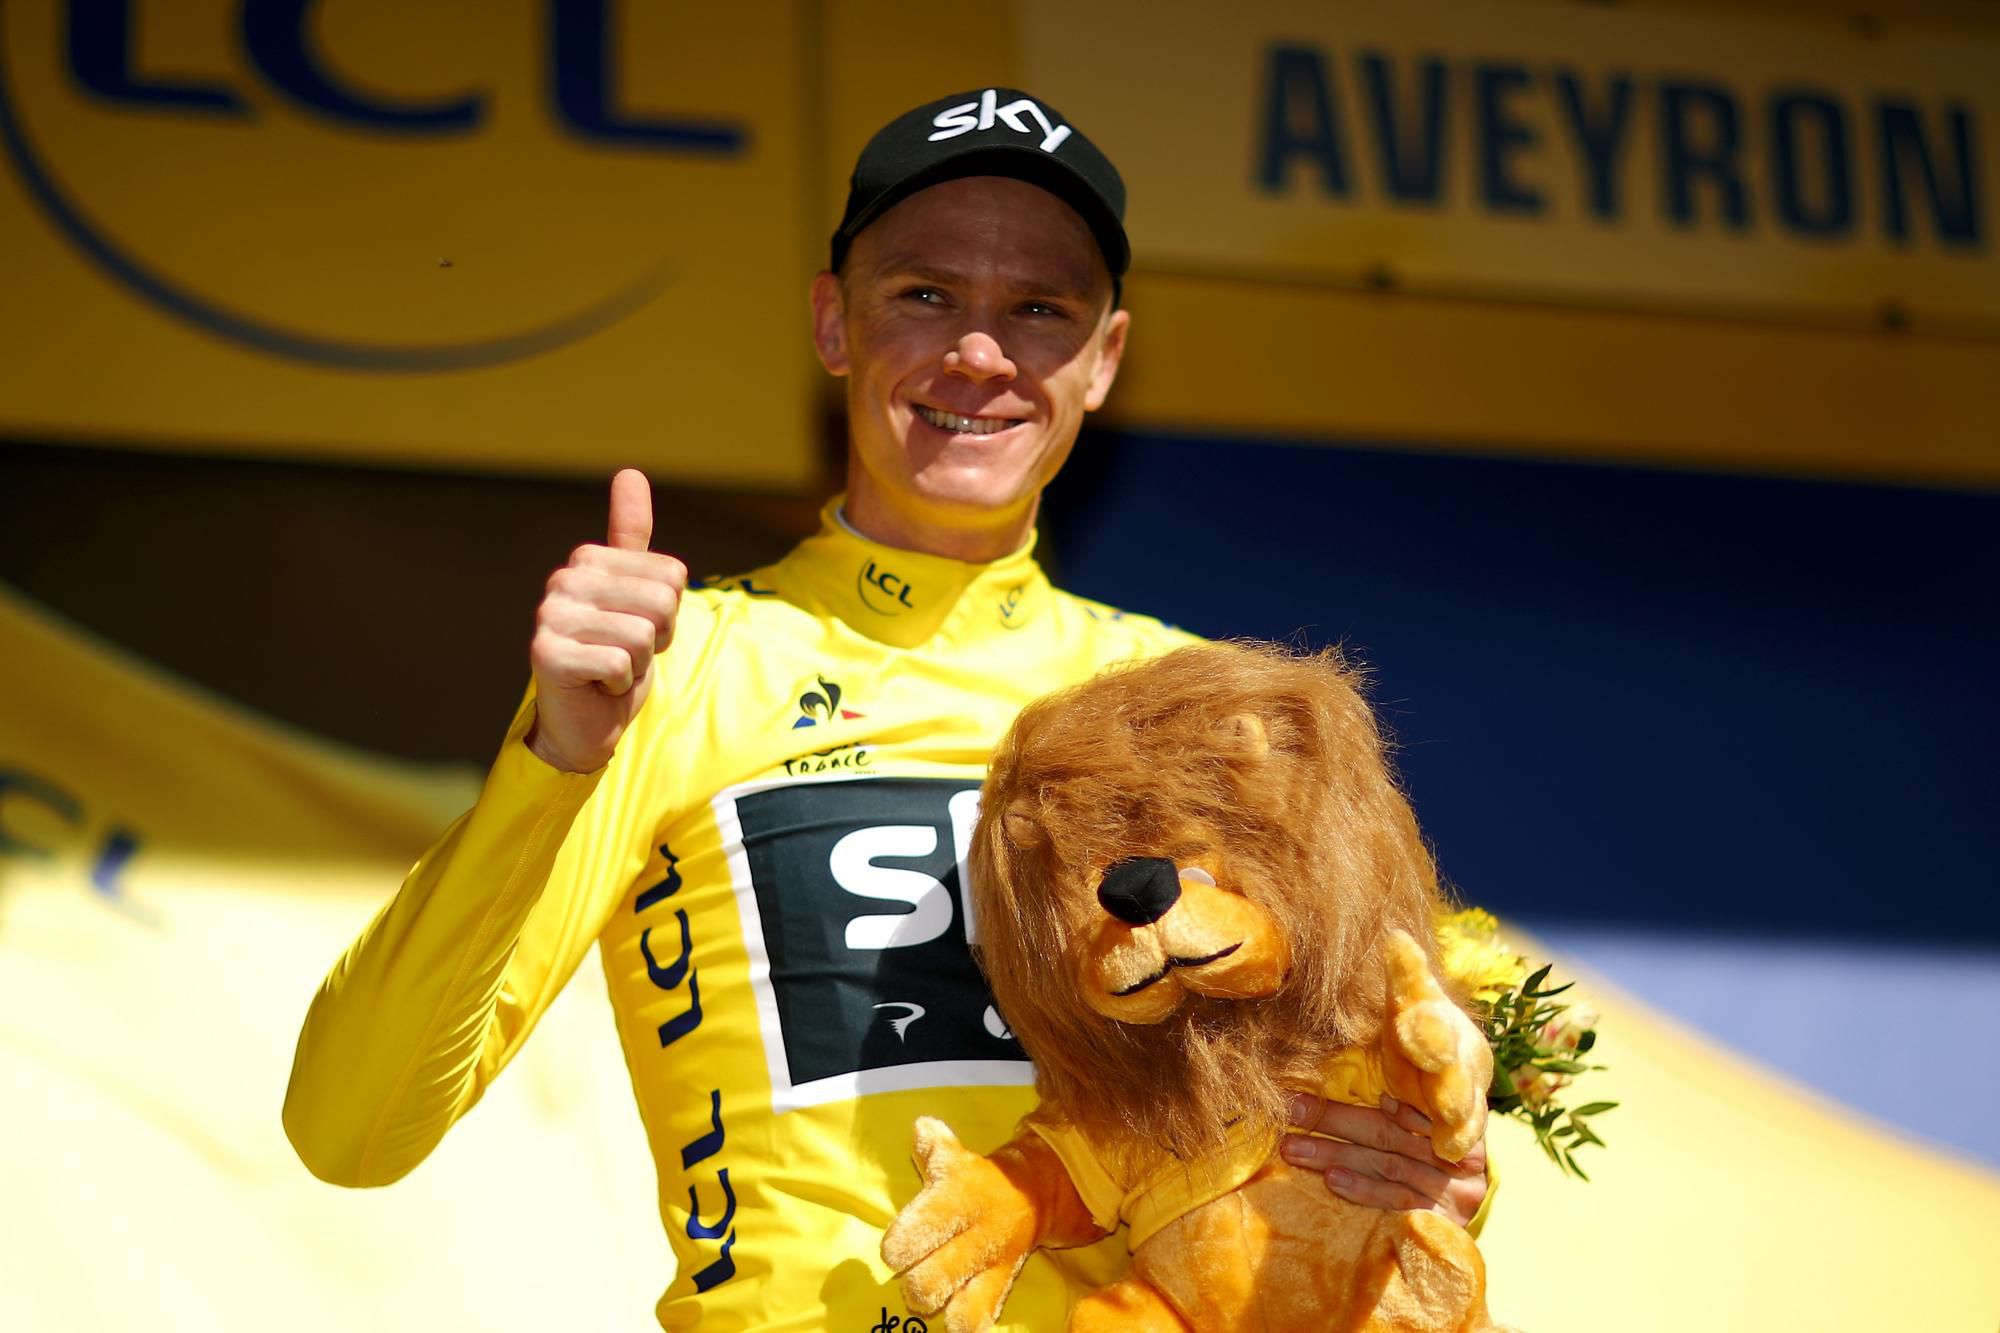 Christopher Froome, Tour de France 2017